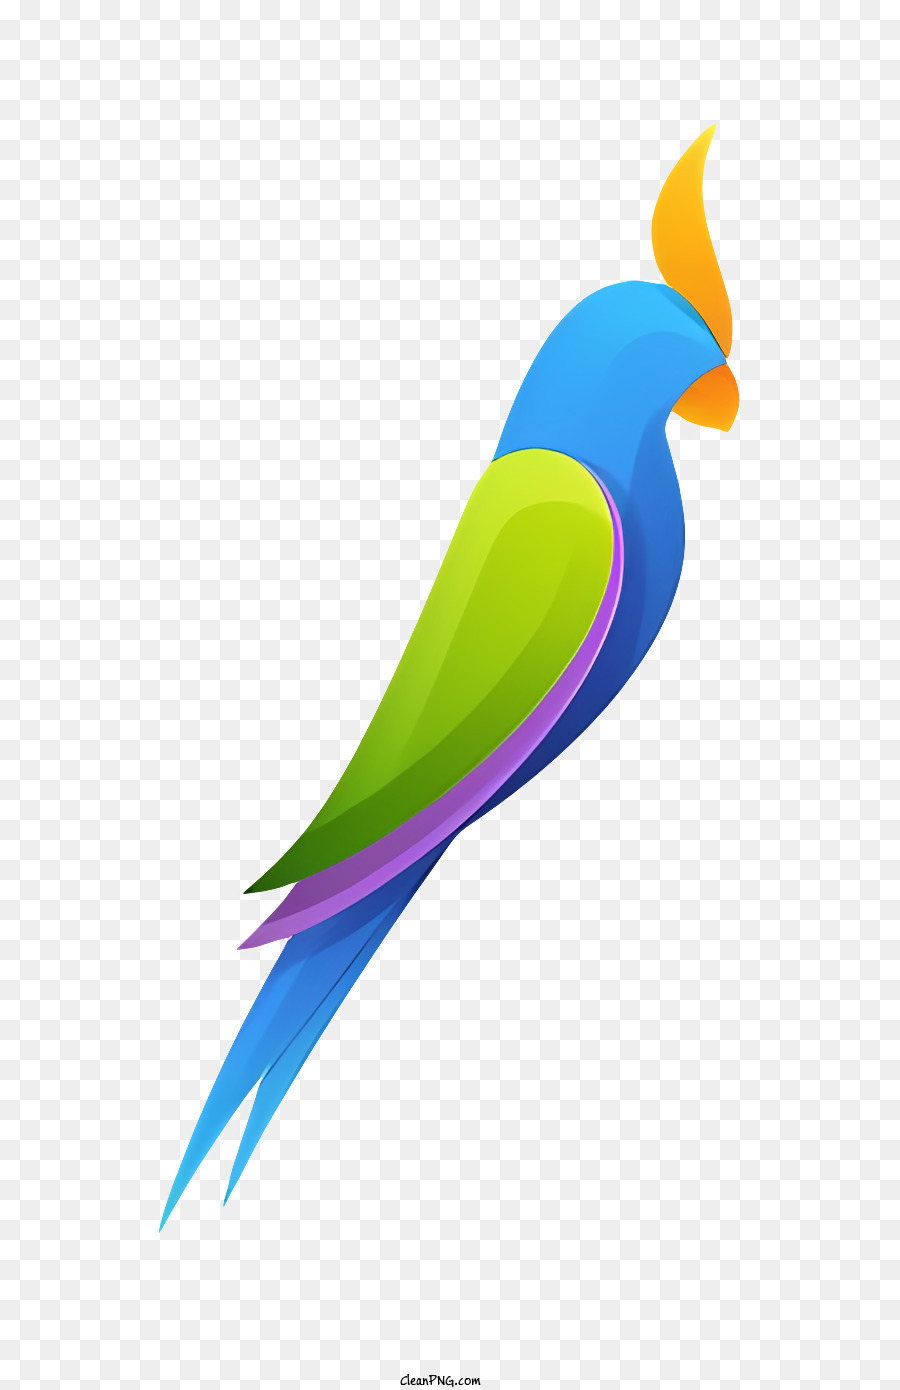 Icon Buntes Papagei Exotischer Vogelpapagei mit langem Schwanzgelbkamm auf Papagei - Farbenfroher Papagei mit Spread Wings auf schwarzem Hintergrund